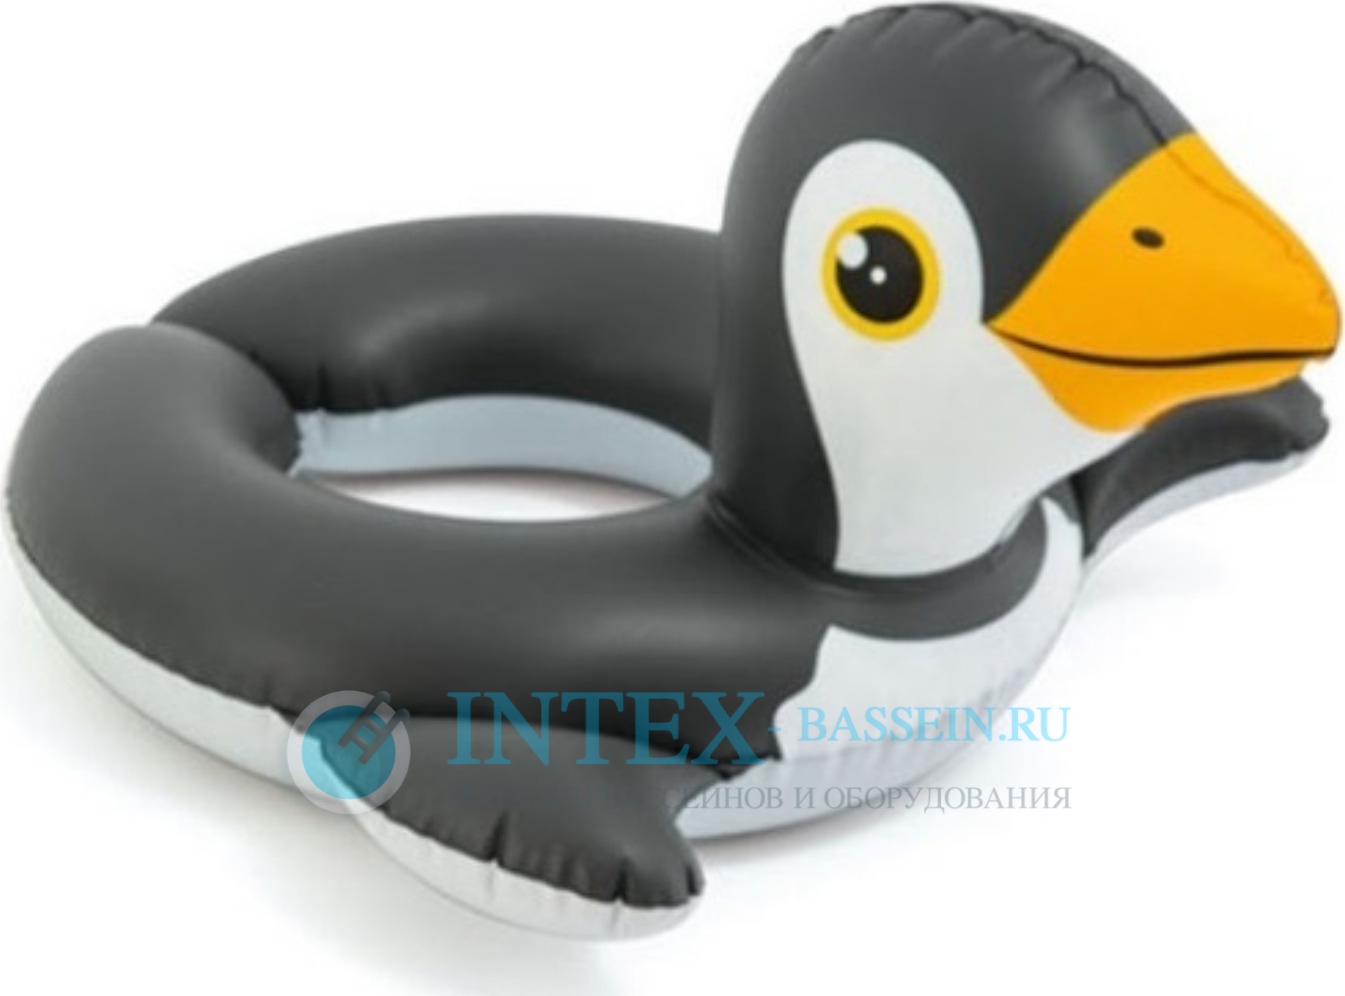 Надувной круг игрушка INTEX "Пингвин" 64 см, артикул 59220-P